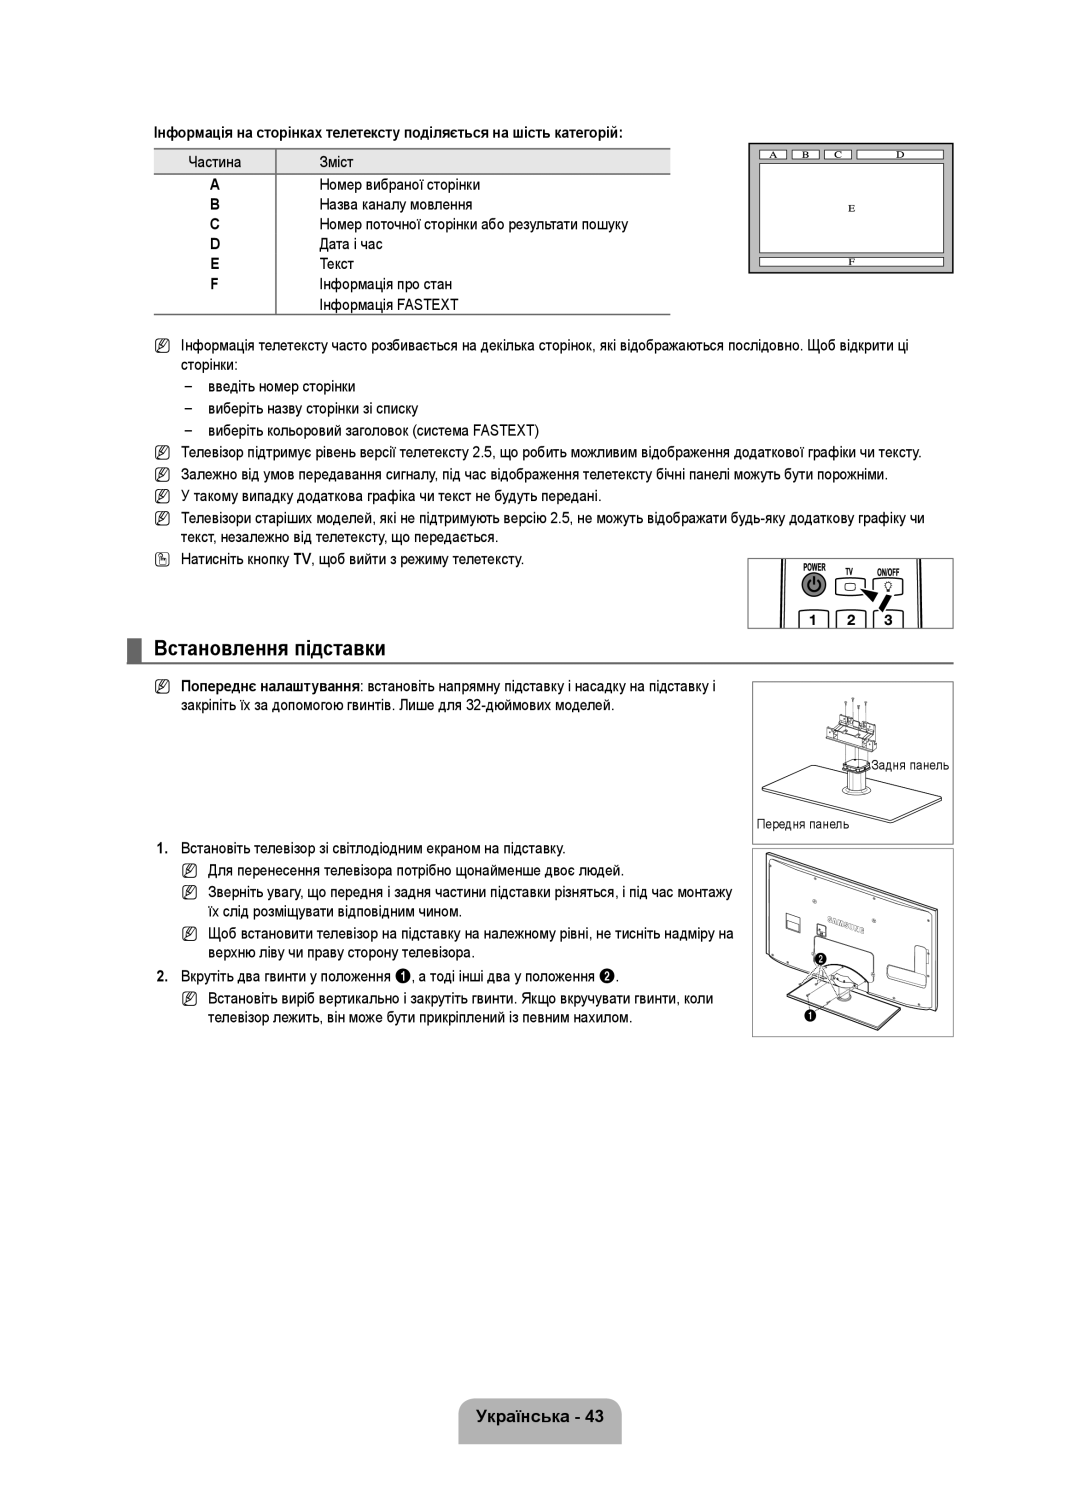 Samsung UE46B6000VWXXN manual Встановлення підставки, Інформація на сторінках телетексту поділяється на шість категорій 